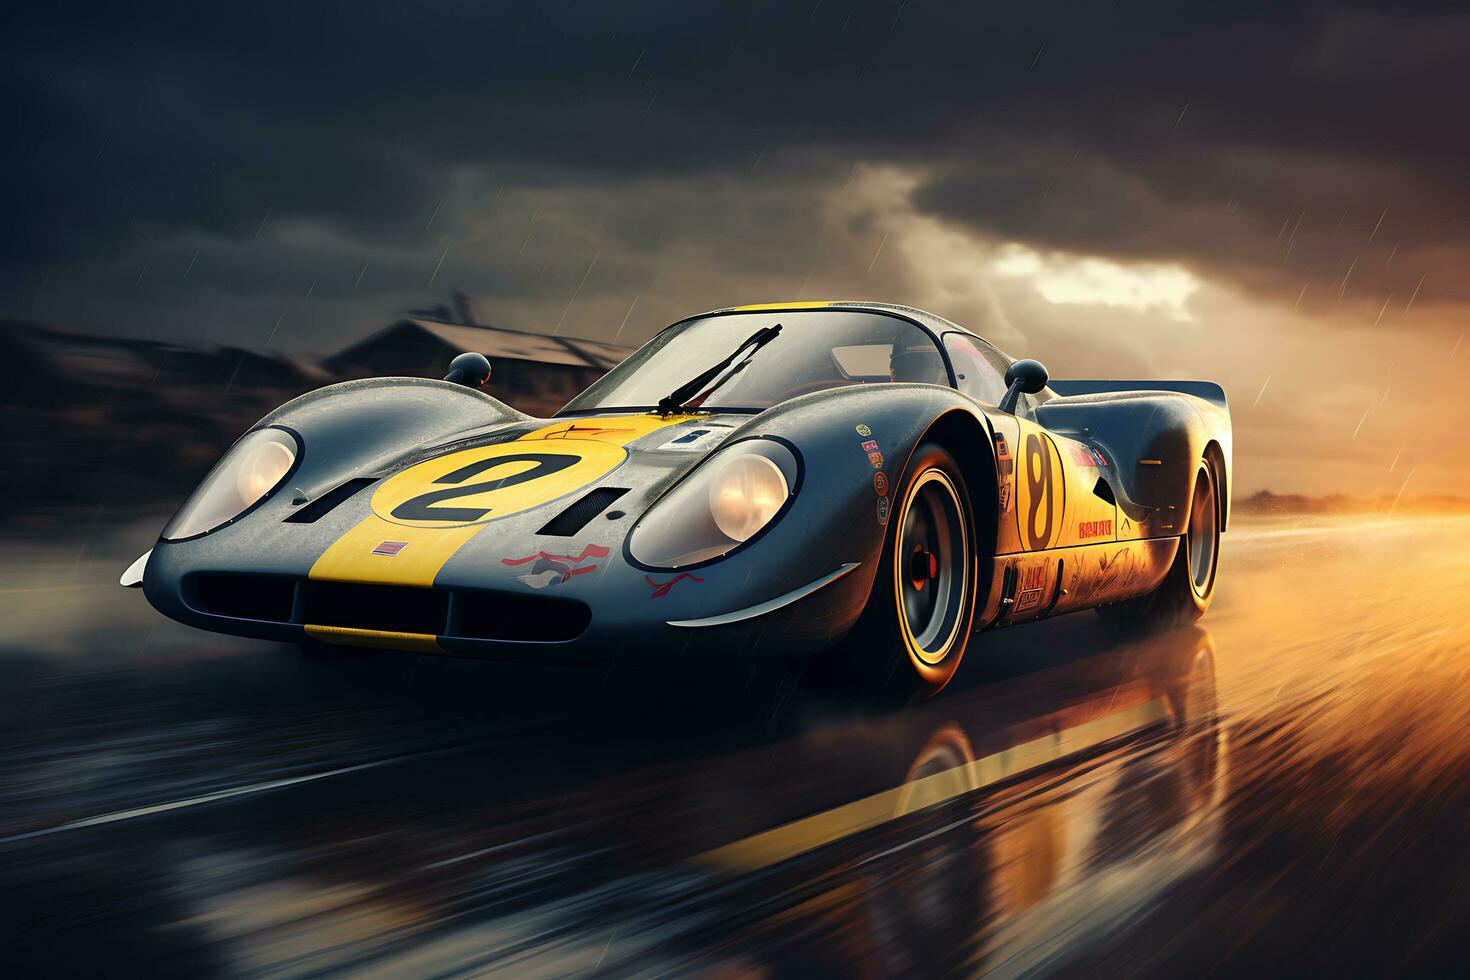 acelerando arriba el mundo de carreras carros. velocidad, estrategia, y superdeportivos. ai generativo foto